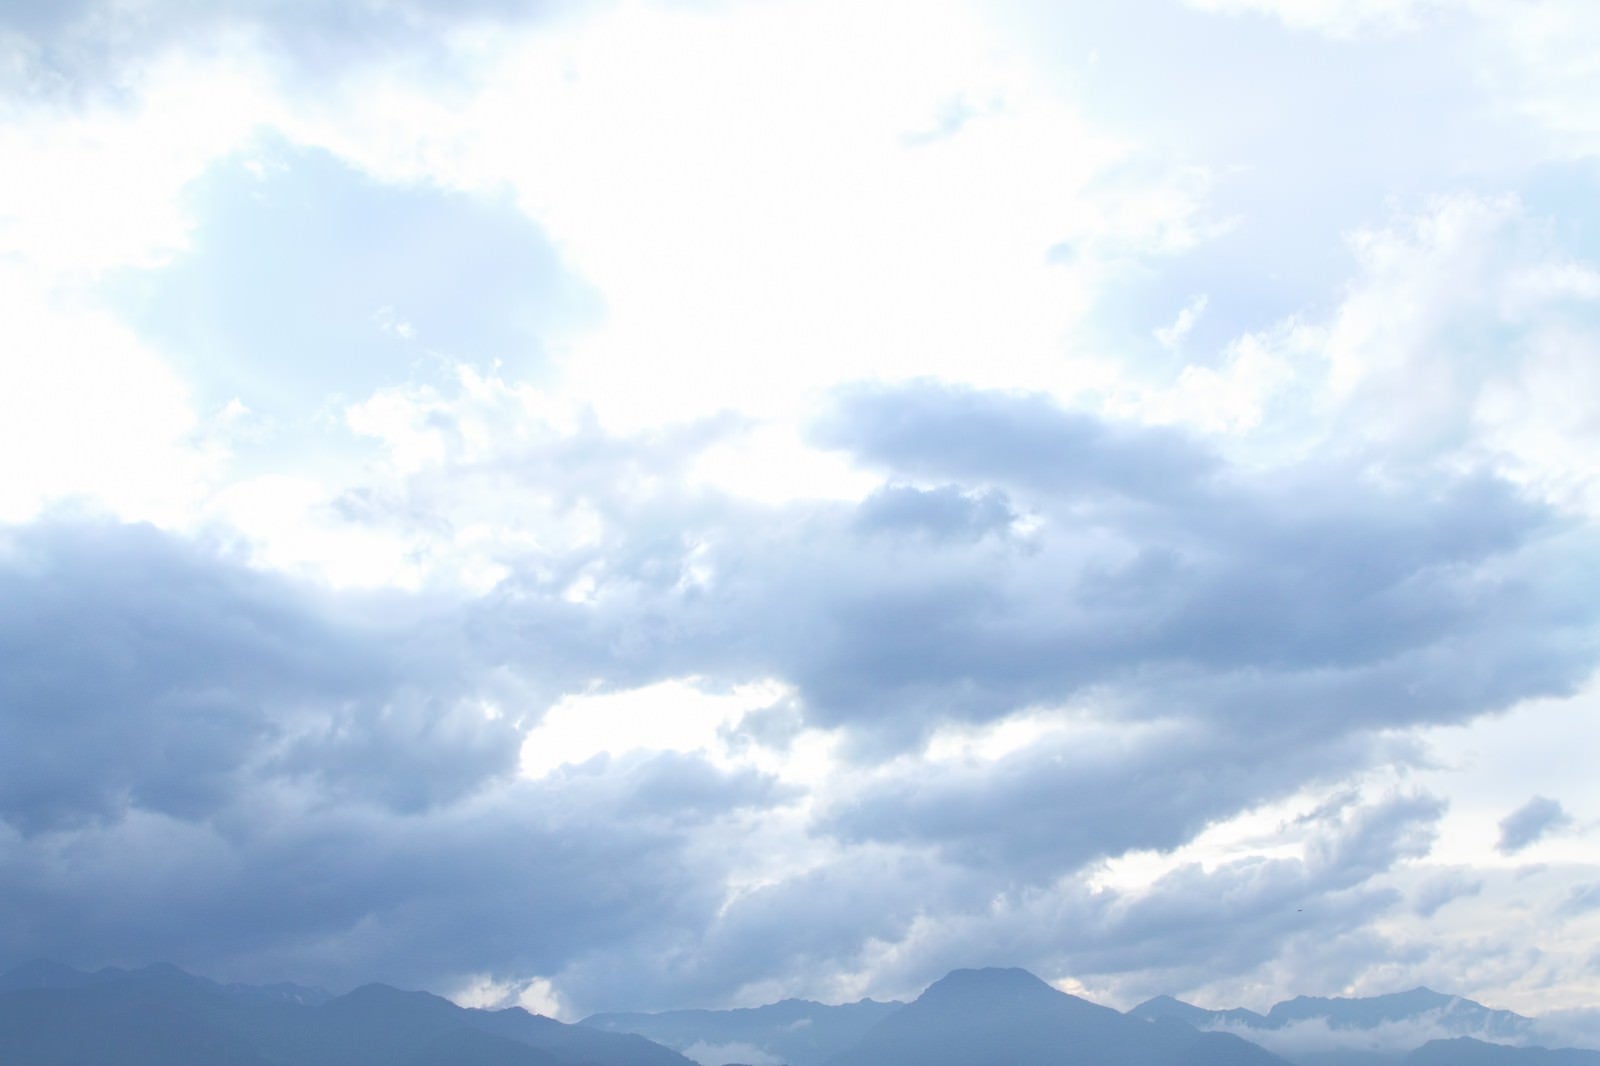 「アルプスの山々と雲」の写真